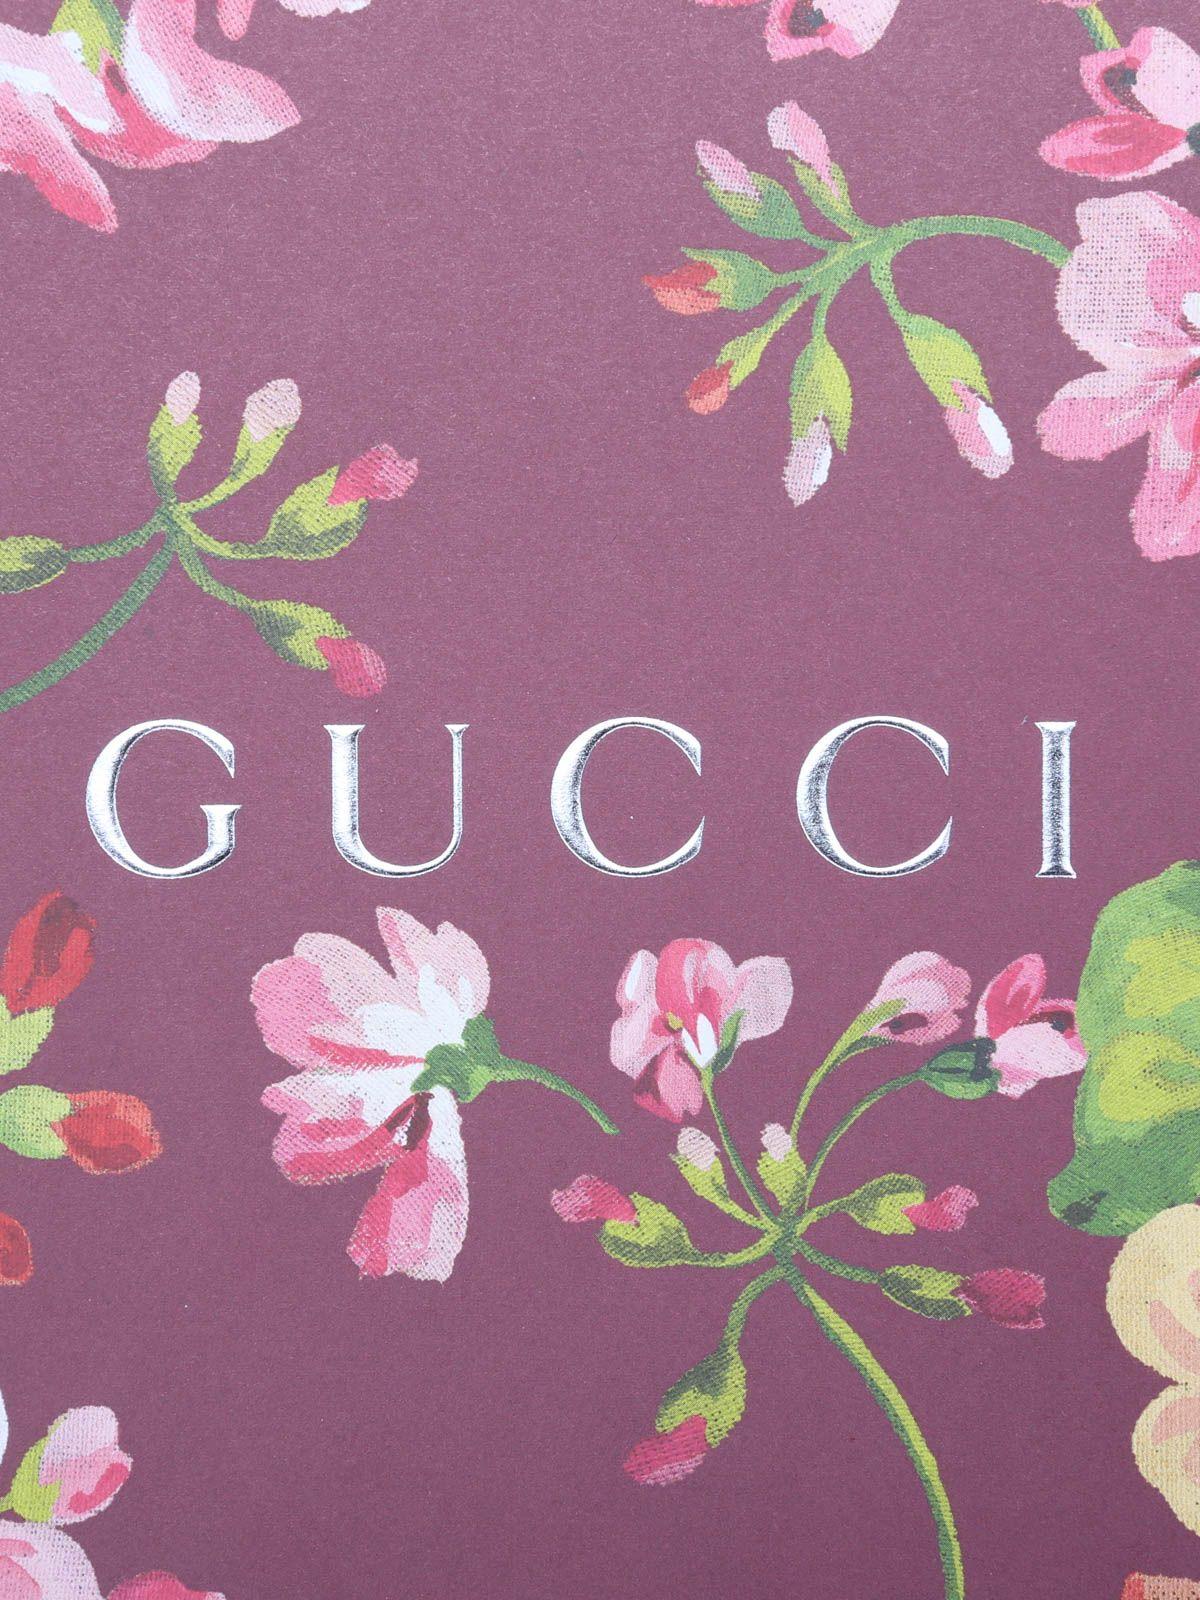 Hình nền Gucci đơn giản mà đẹp